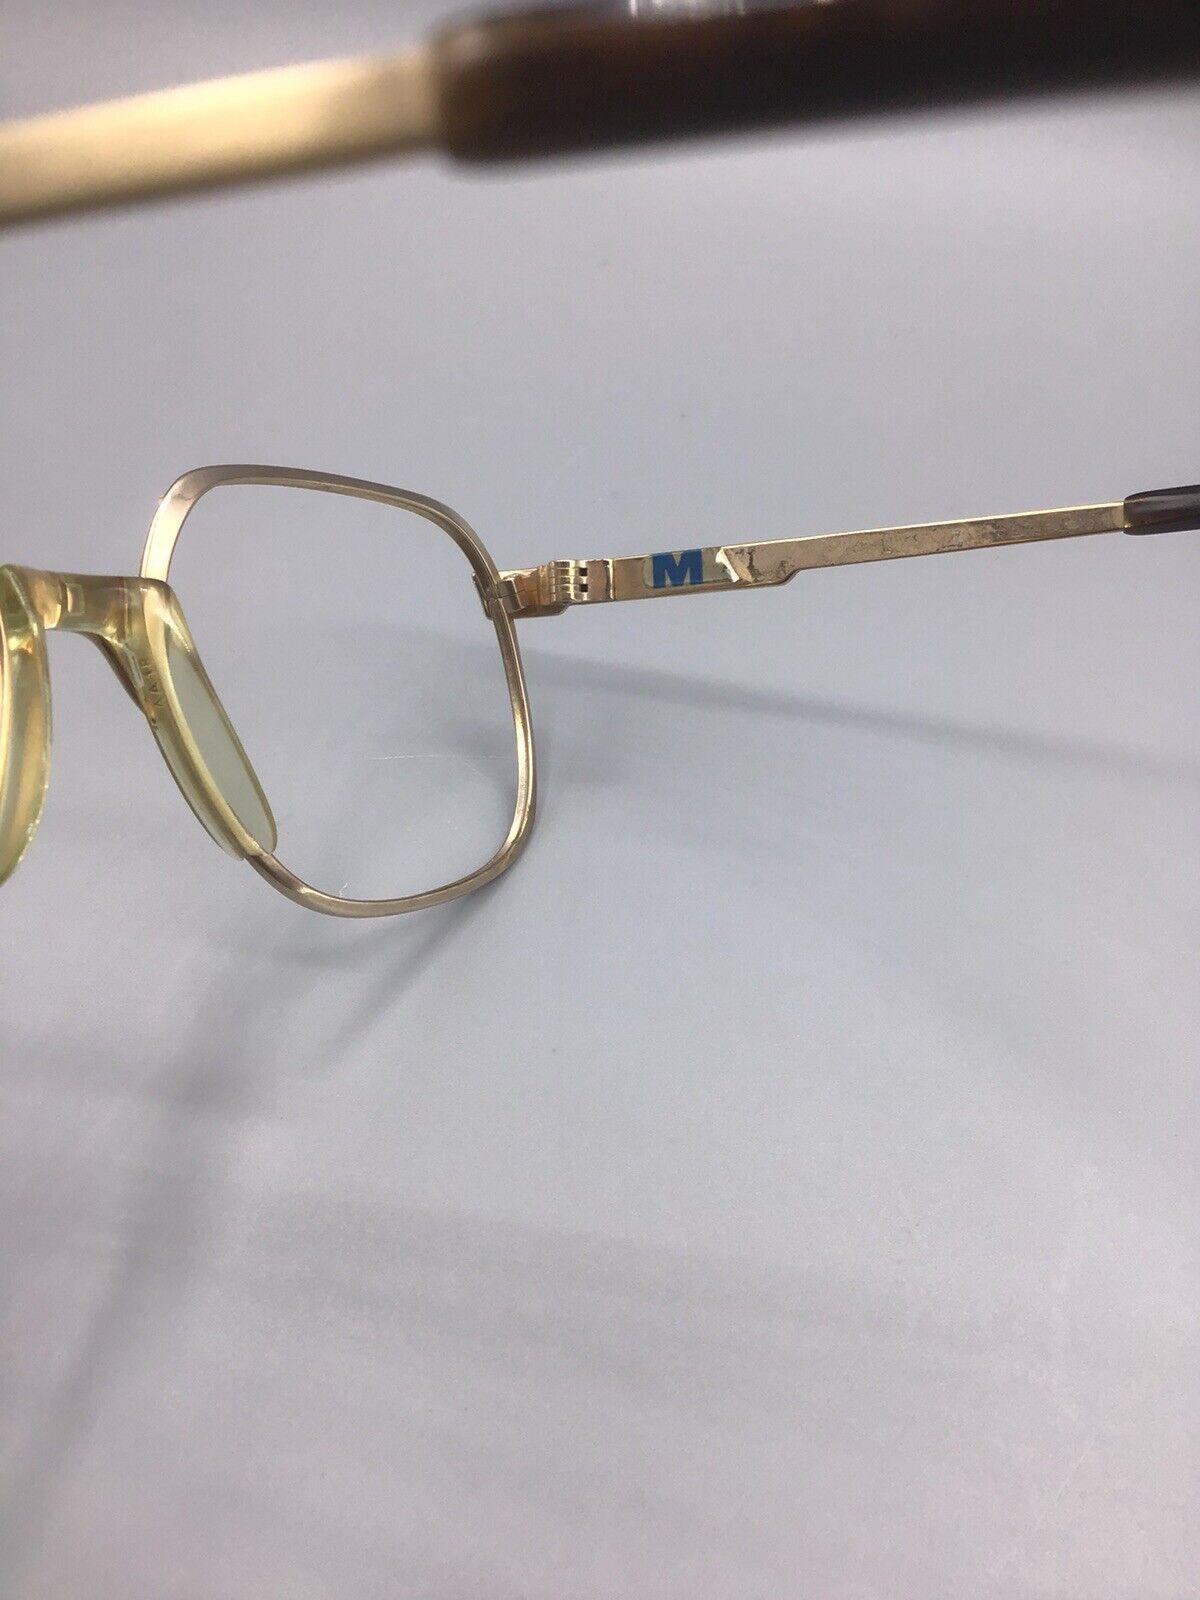 Metzler eyeglasses 7745 frame Germany occhiale vintage brillen Gold laminated